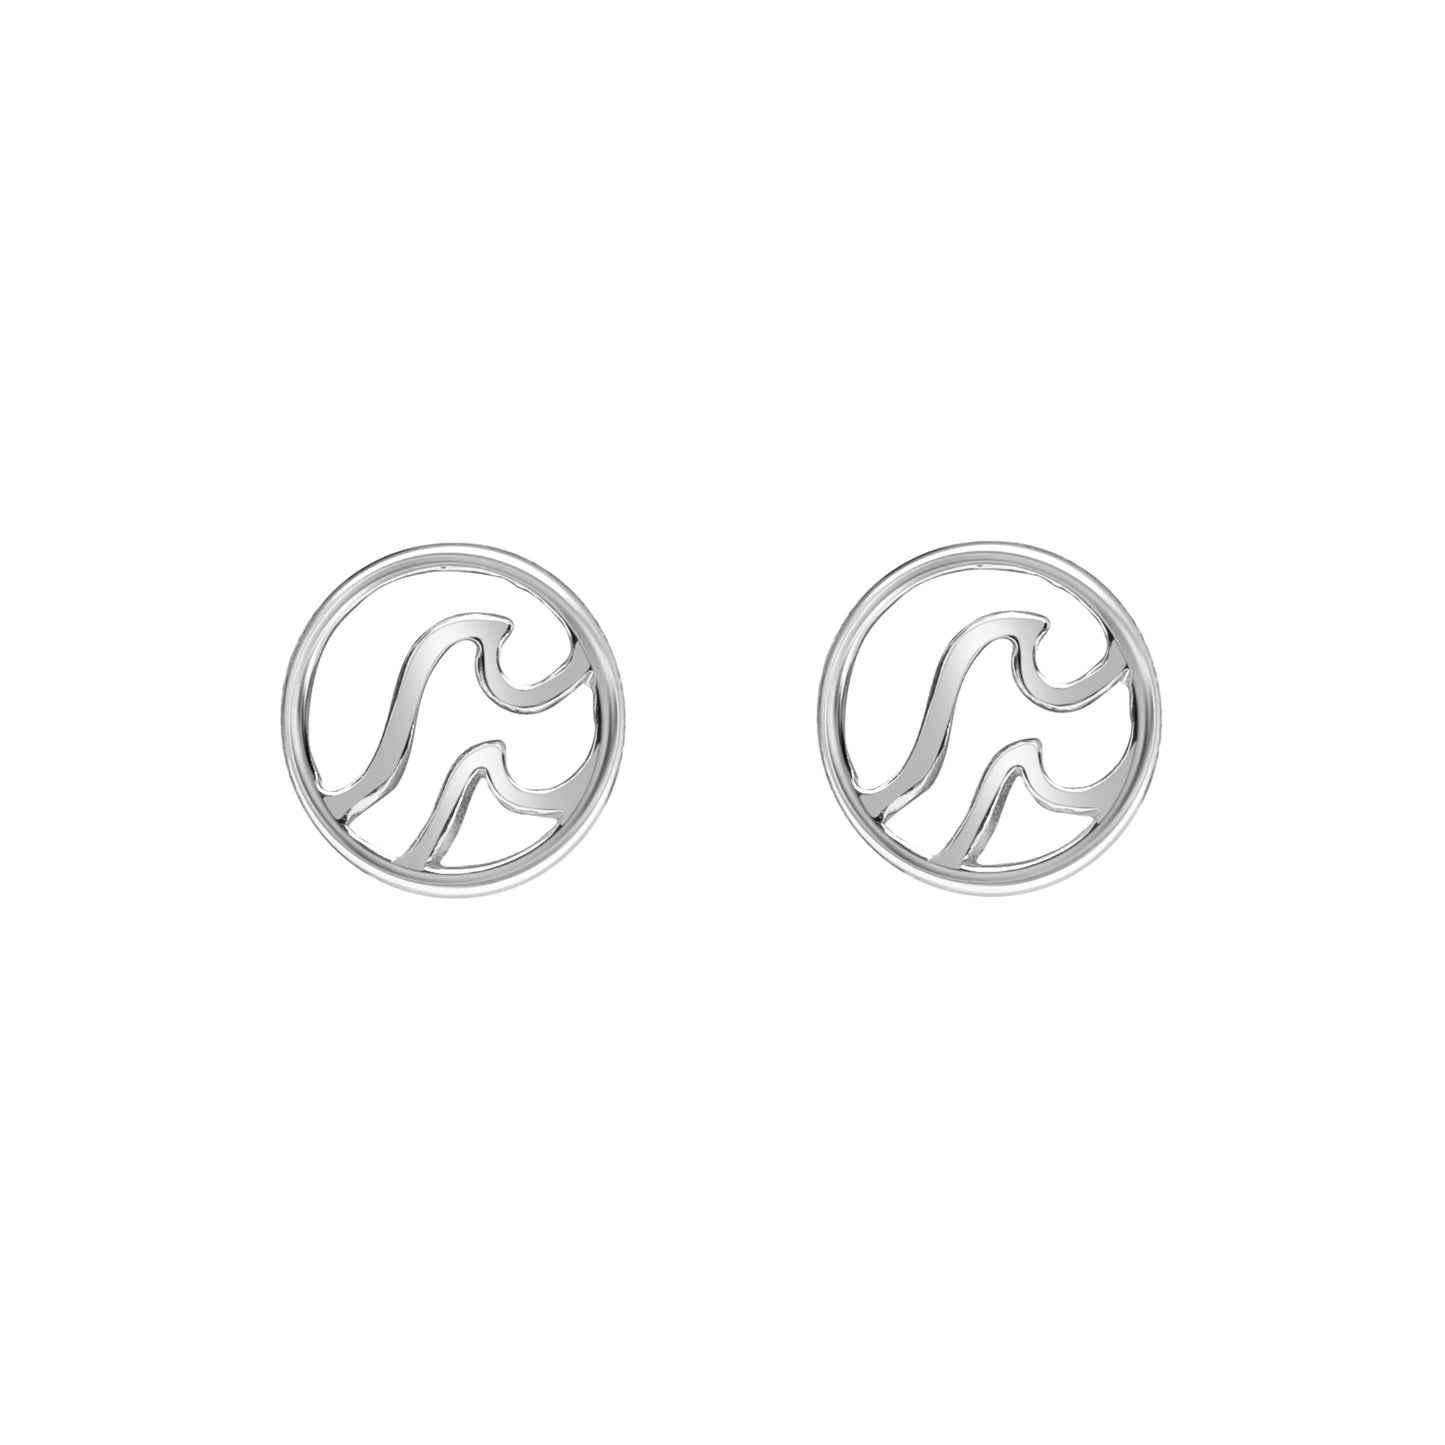 Sterling Silver Circular Dual Wave Stud Earrings